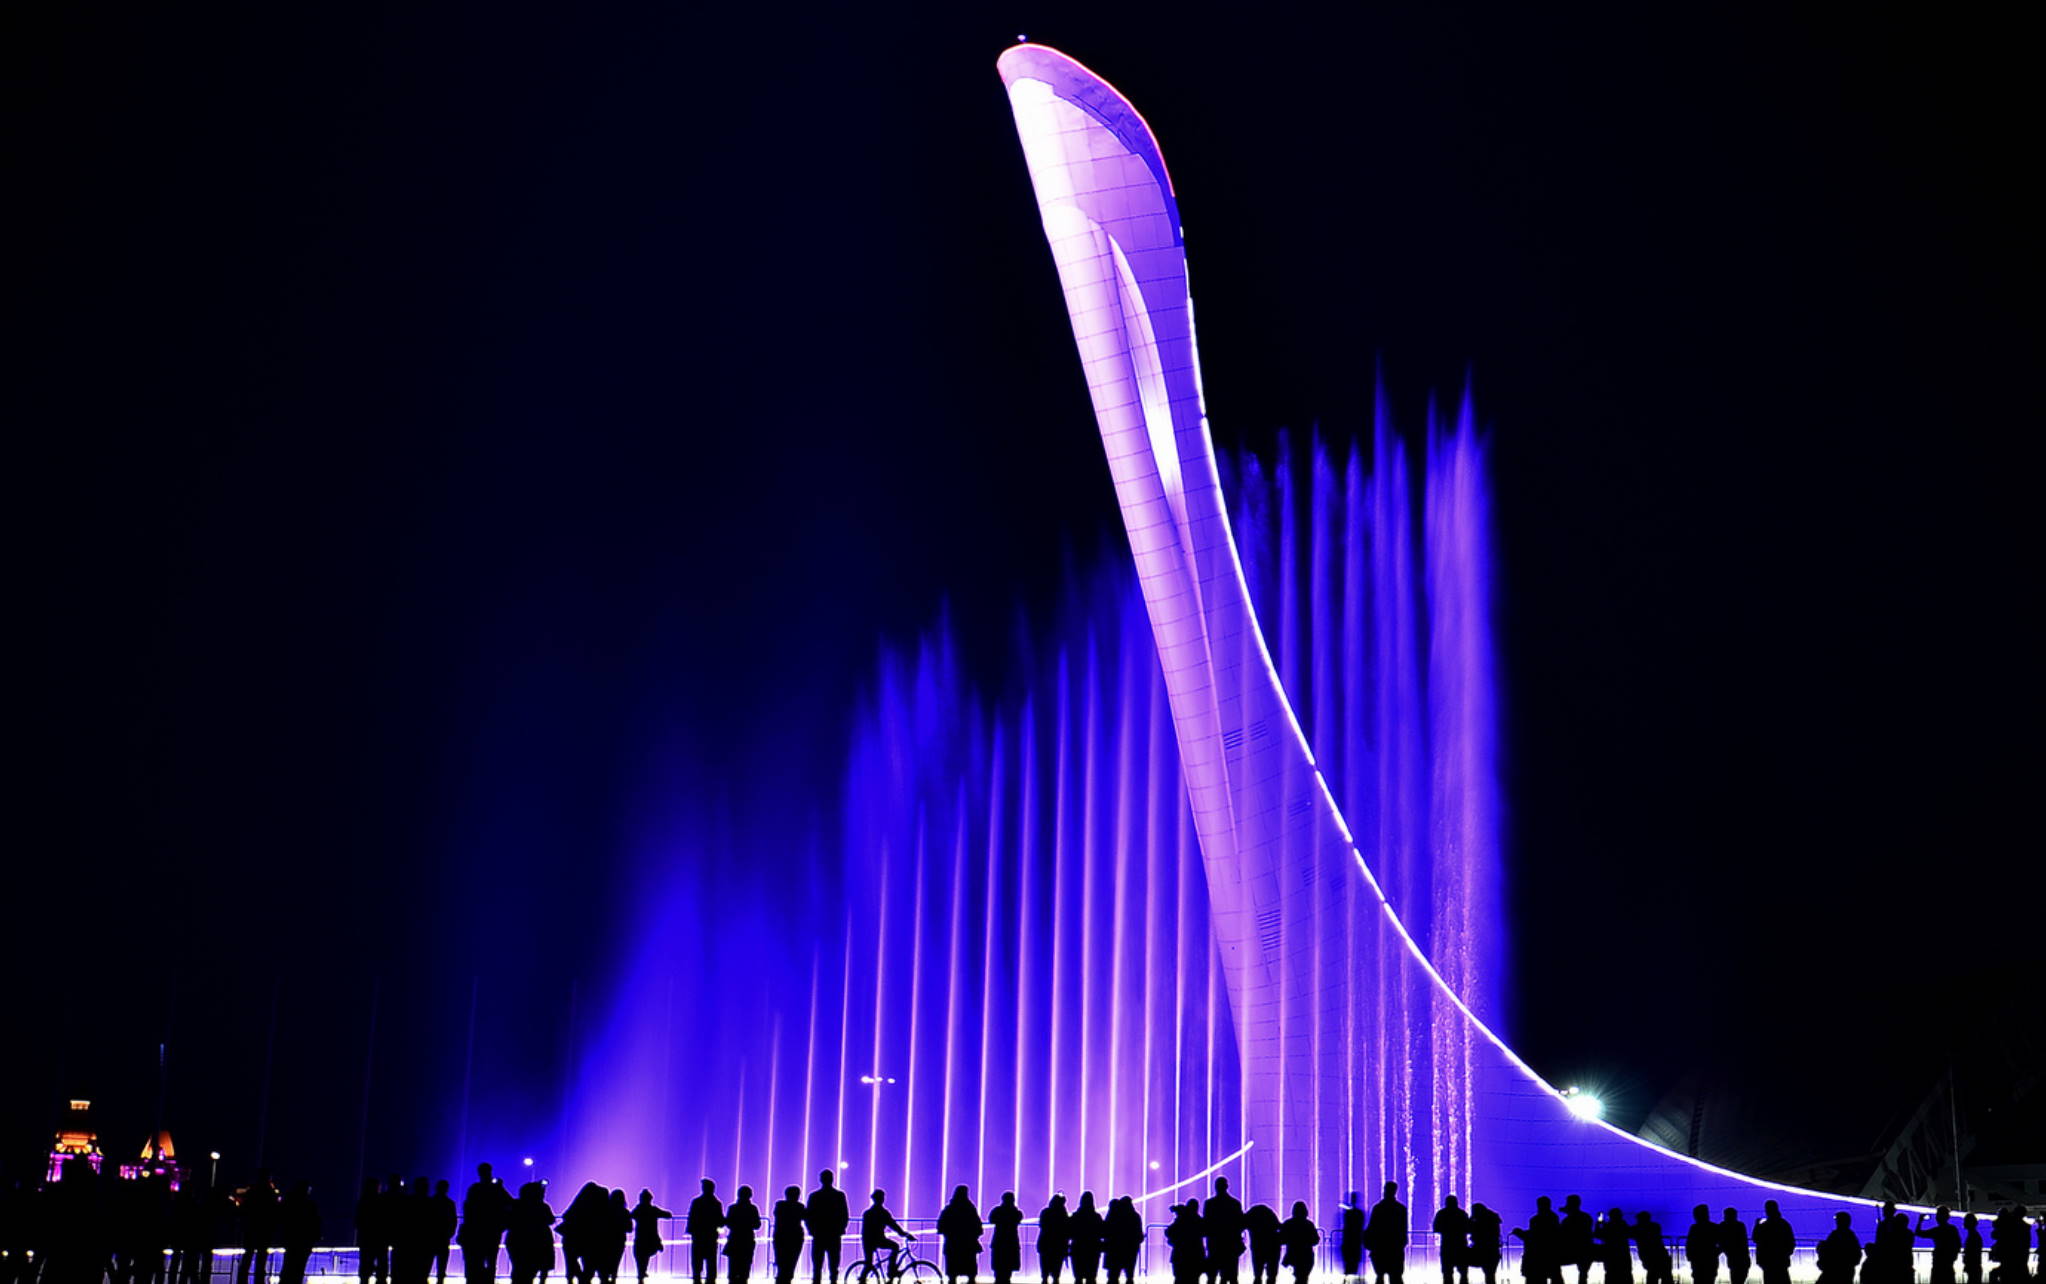 Олимпийский парк работа поющих фонтанов. Поющие фонтаны Сочи Олимпийский парк. Поющий фонтан Адлер Олимпийский парк. Сочи шоу фонтанов в Олимпийском парке. Поющий фонтан в Сочи в Олимпийском парке.